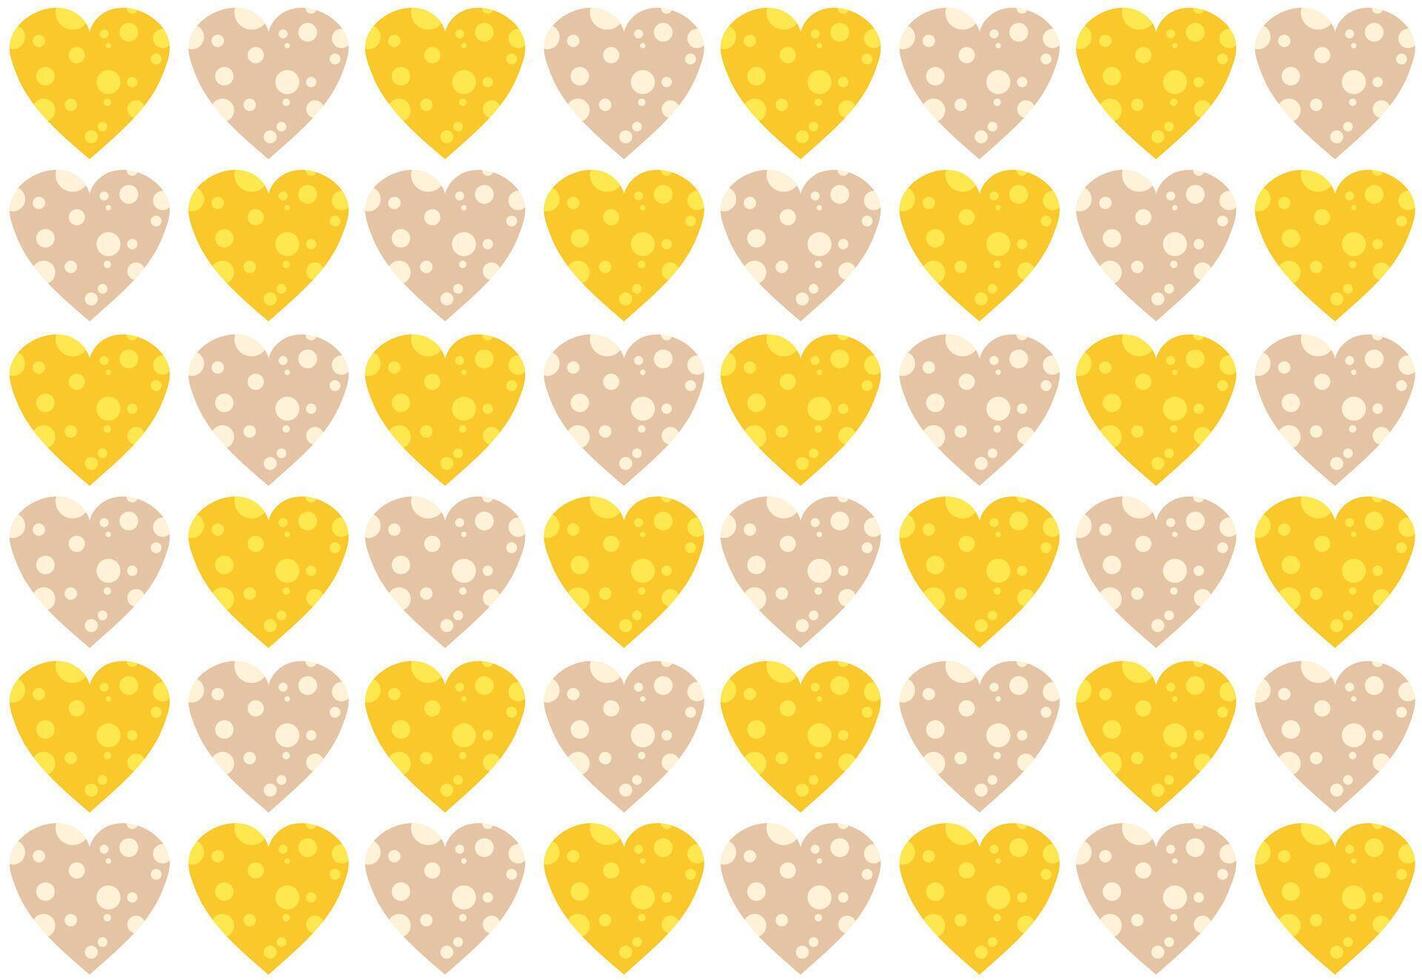 schattig baby patroon met geel en beige harten. kaas in de vorm van een hart. knus achtergrond met harten. abstract naadloos afdrukken voor geschenk inpakken. grappig kind patroon voor kleren, linnen. vector